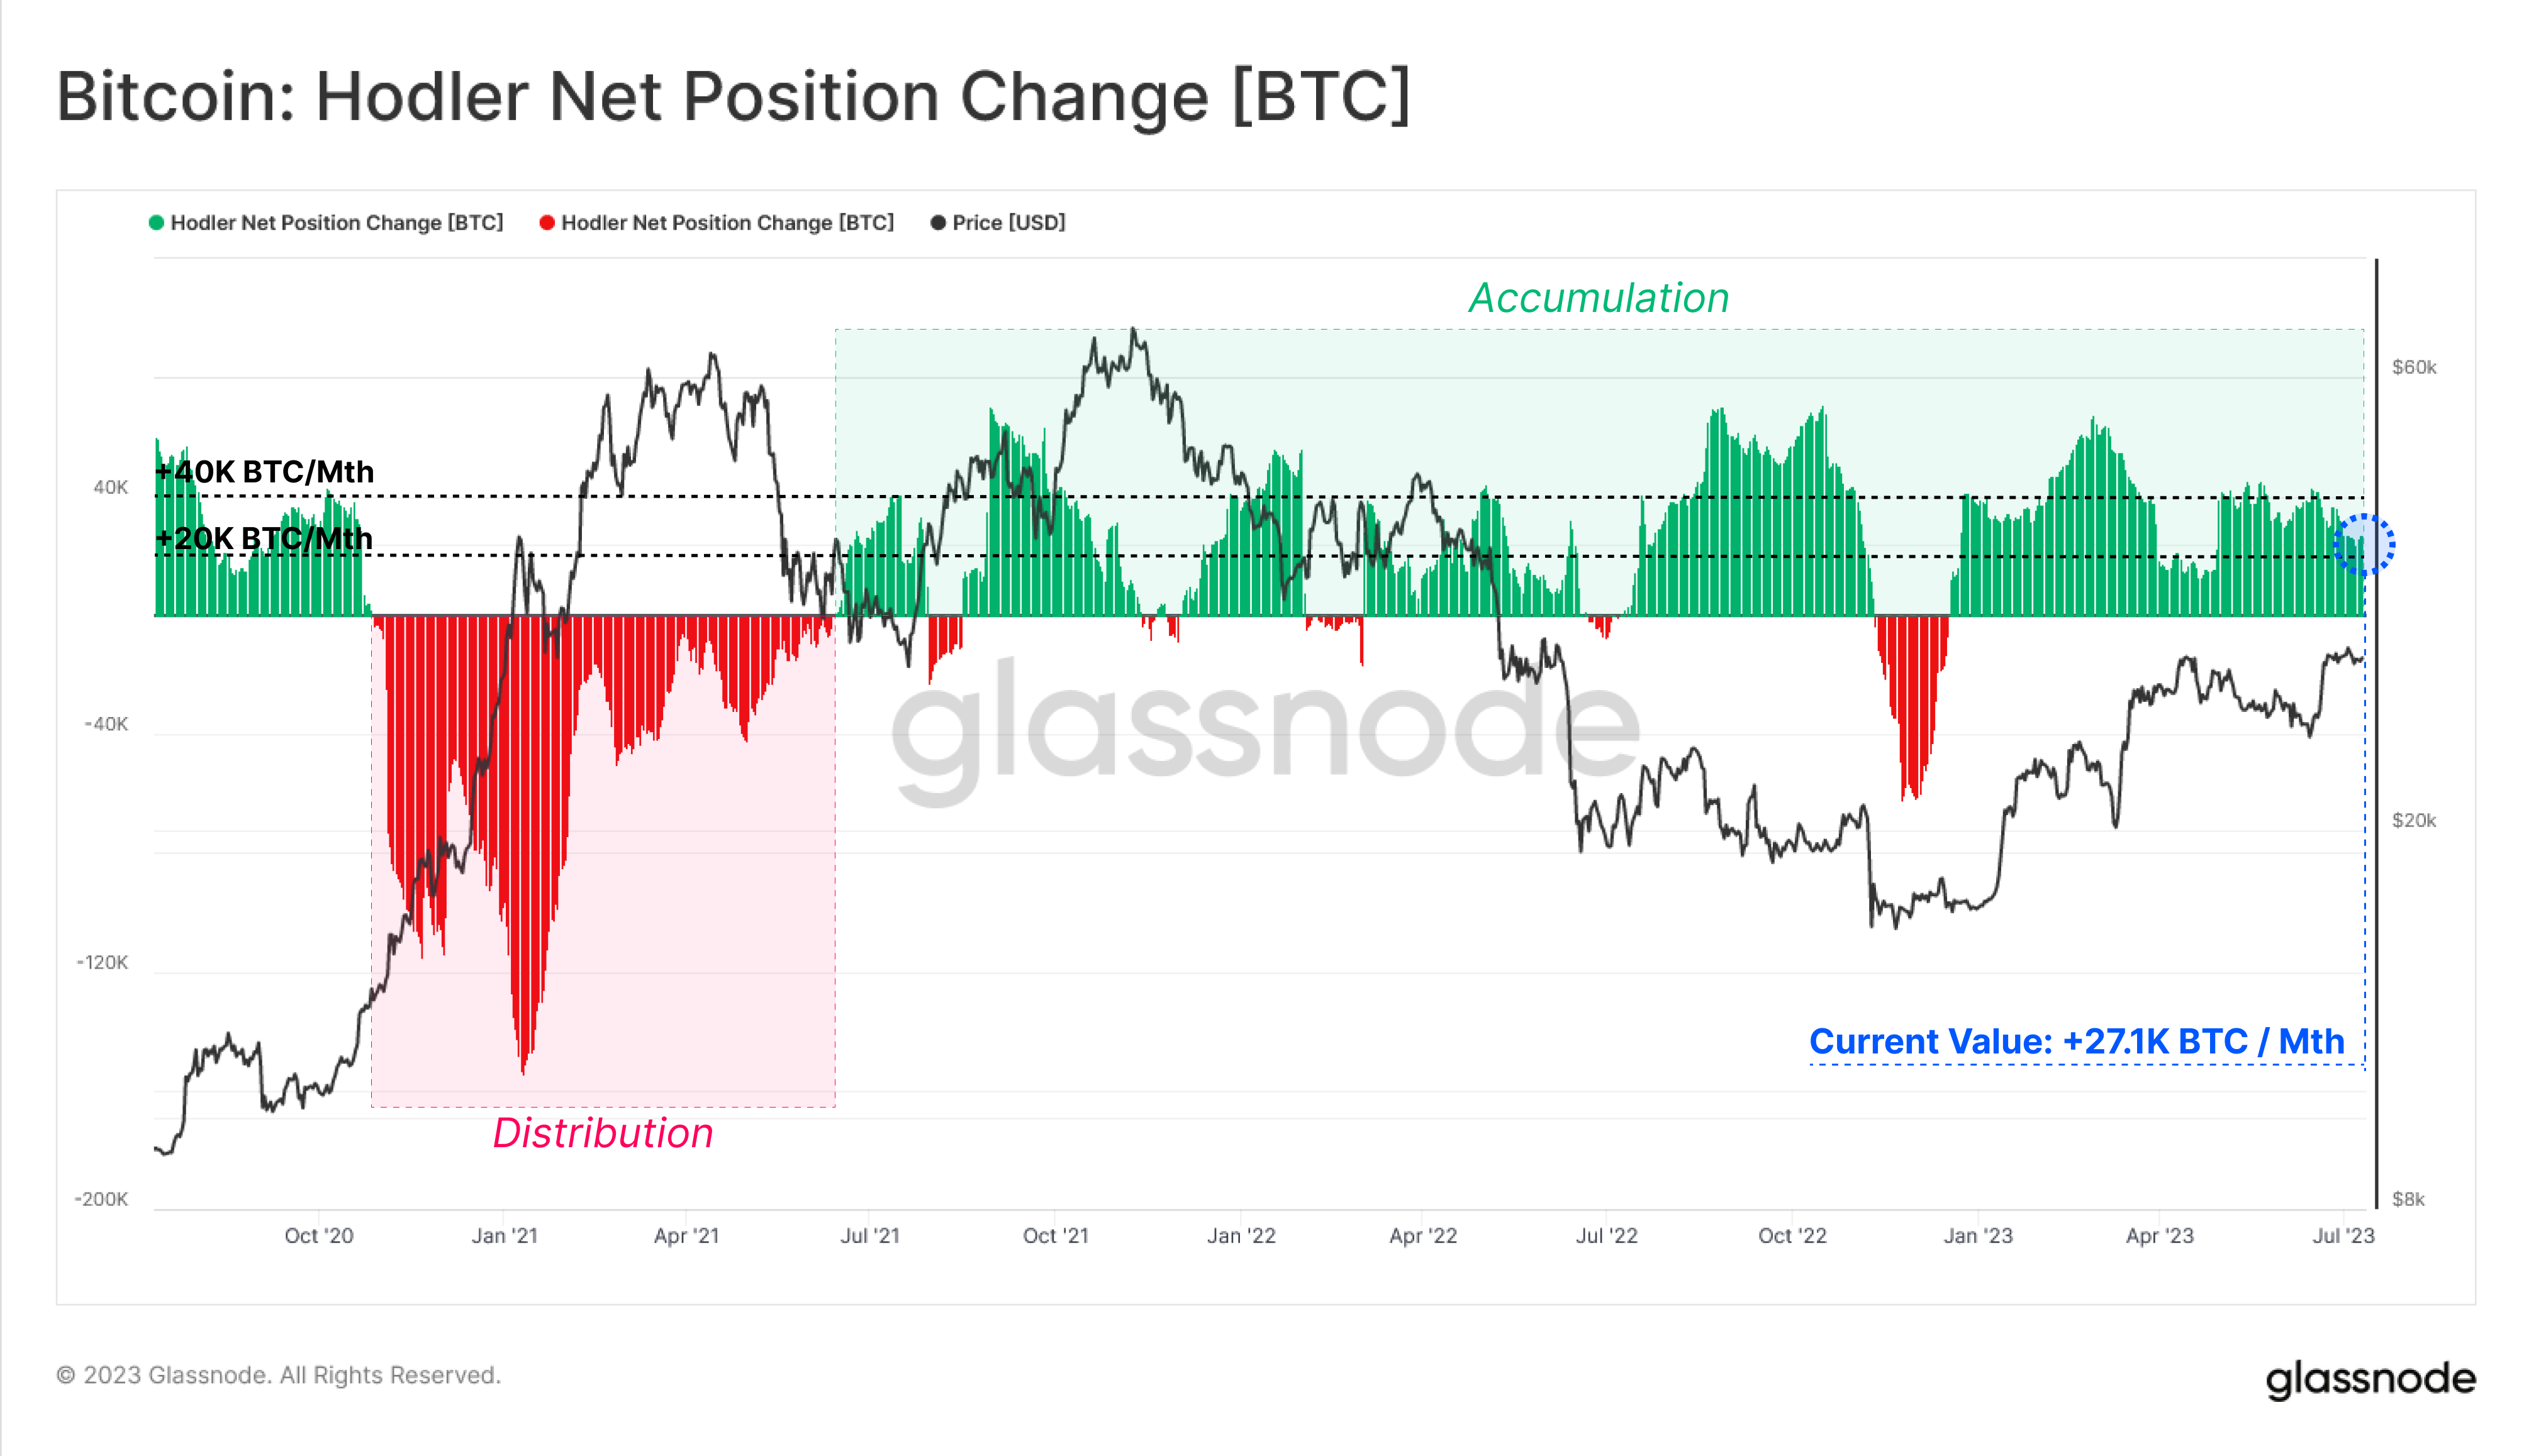 Bitcoin HODLer Net Position Change